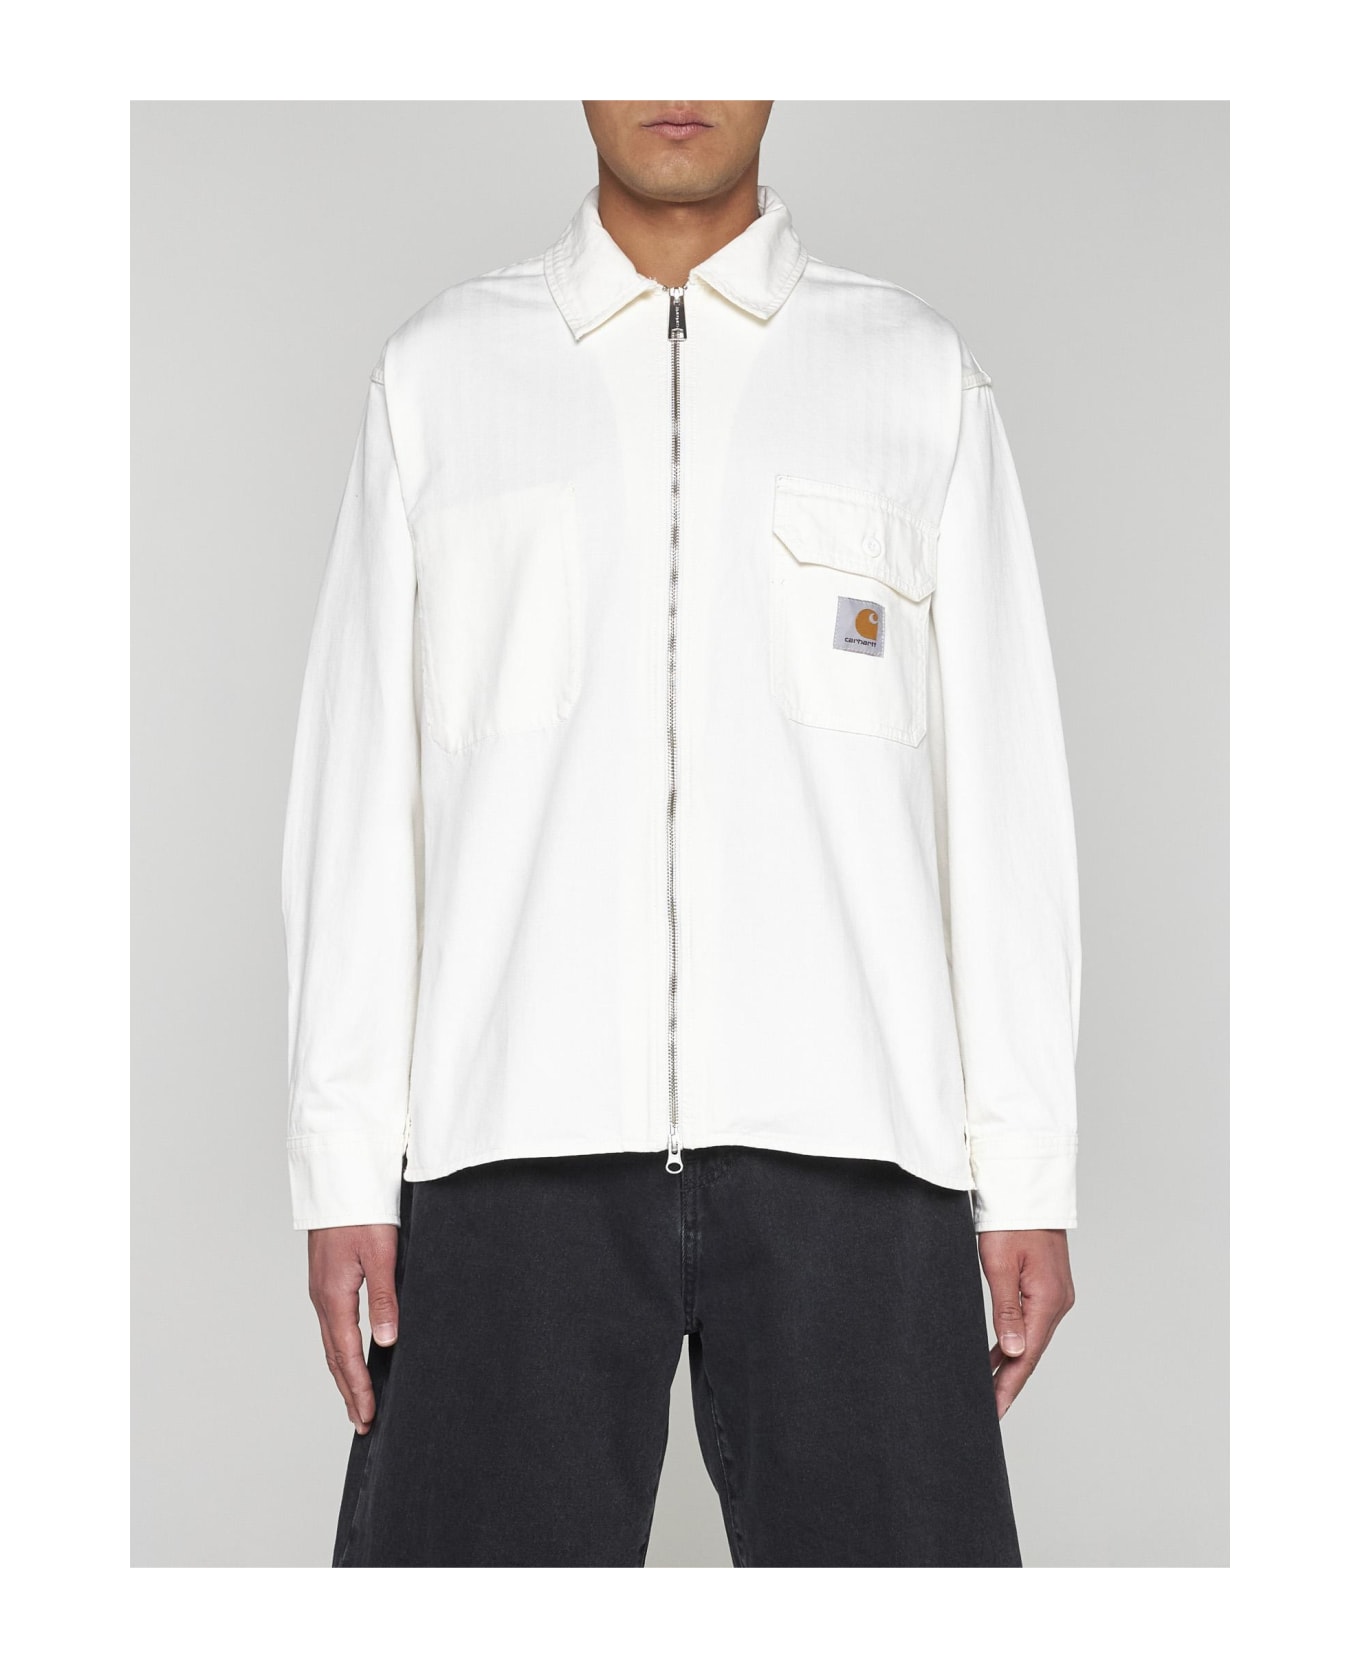 Carhartt Redmond Cotton Shirt Jacket - Bianco